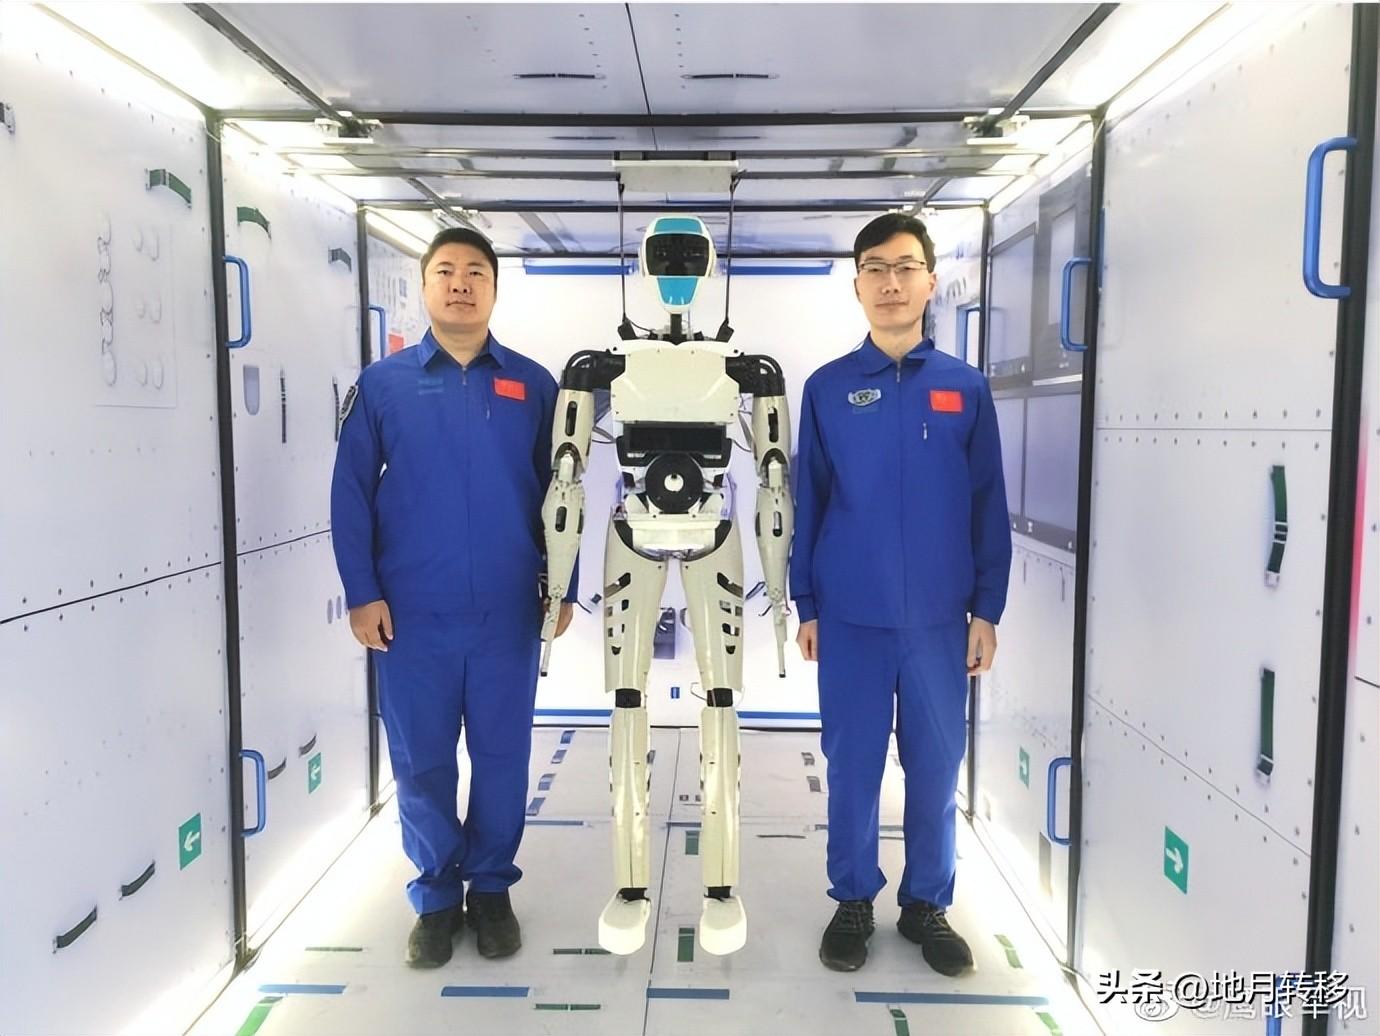 humanoider Roboter